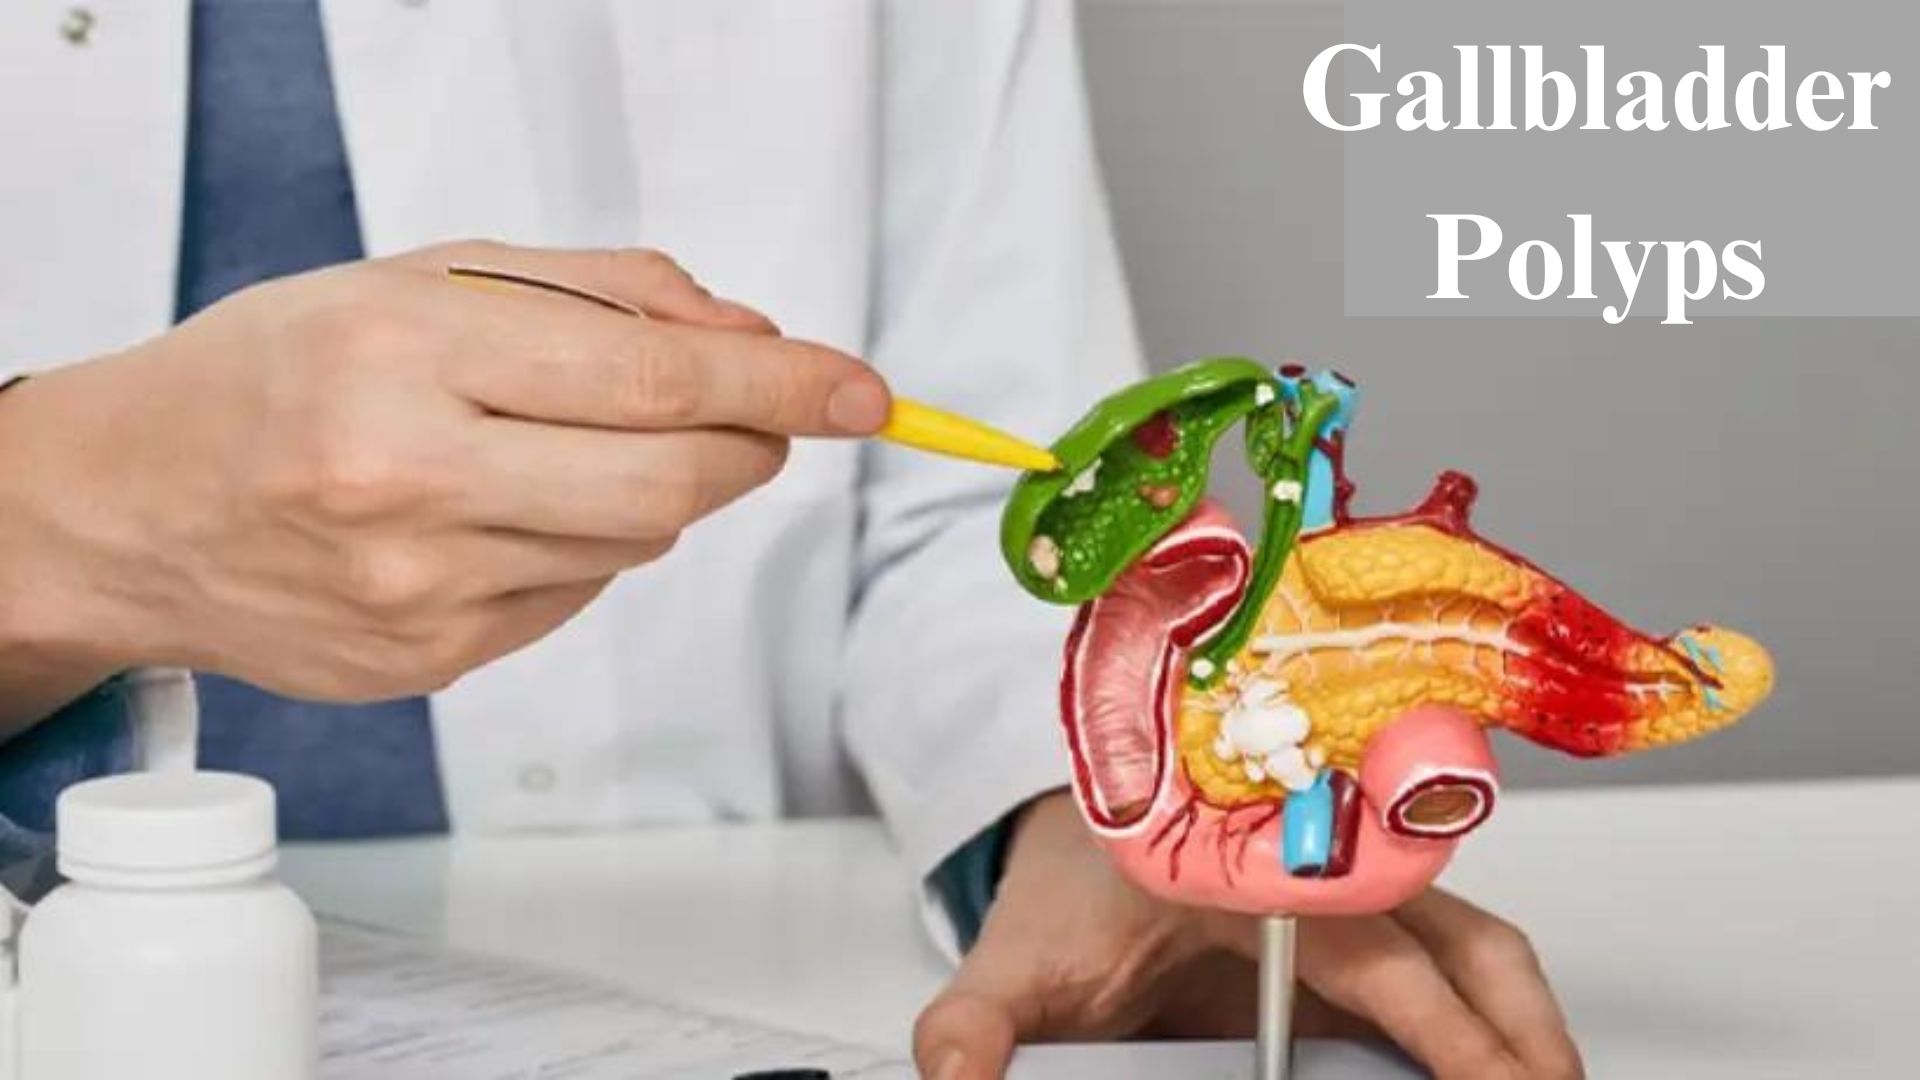 Gallbladder Polyps ICD 10